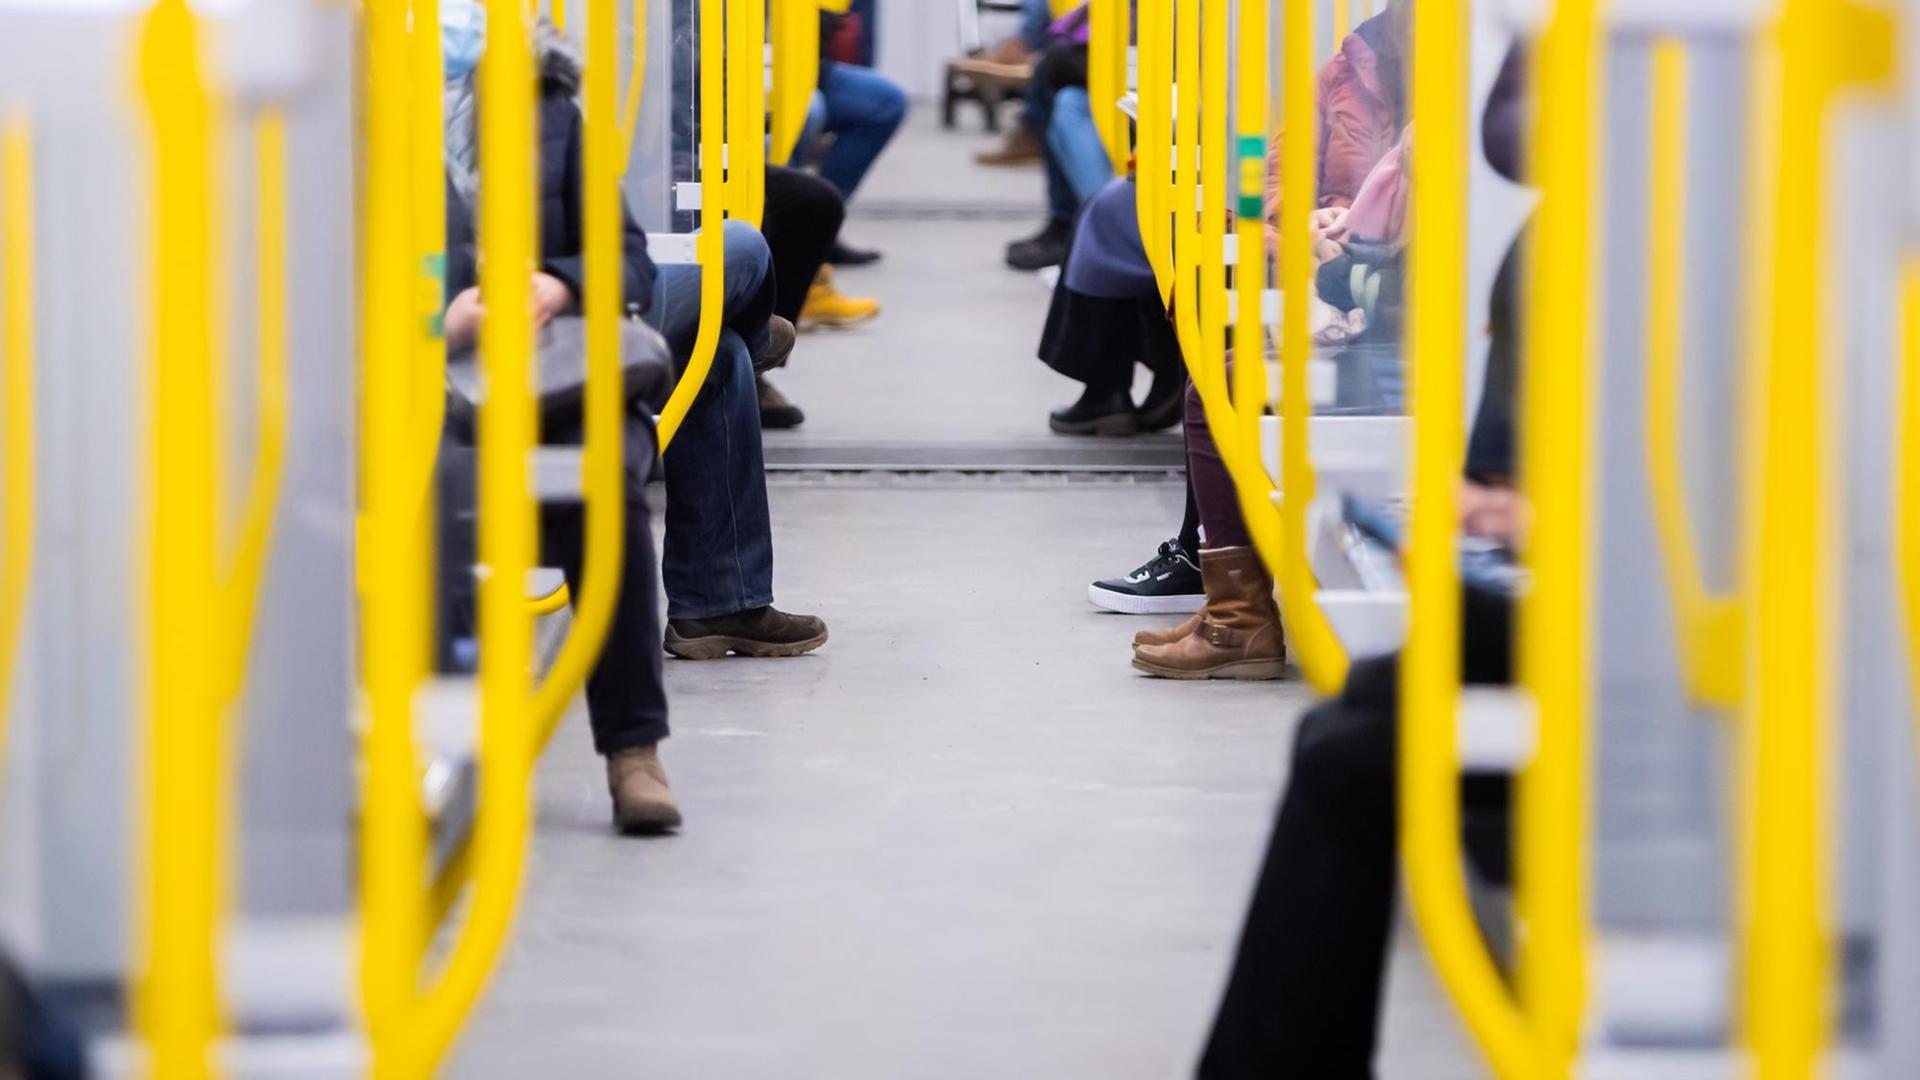 Fahrgäste sitzen in einer U-Bahn.